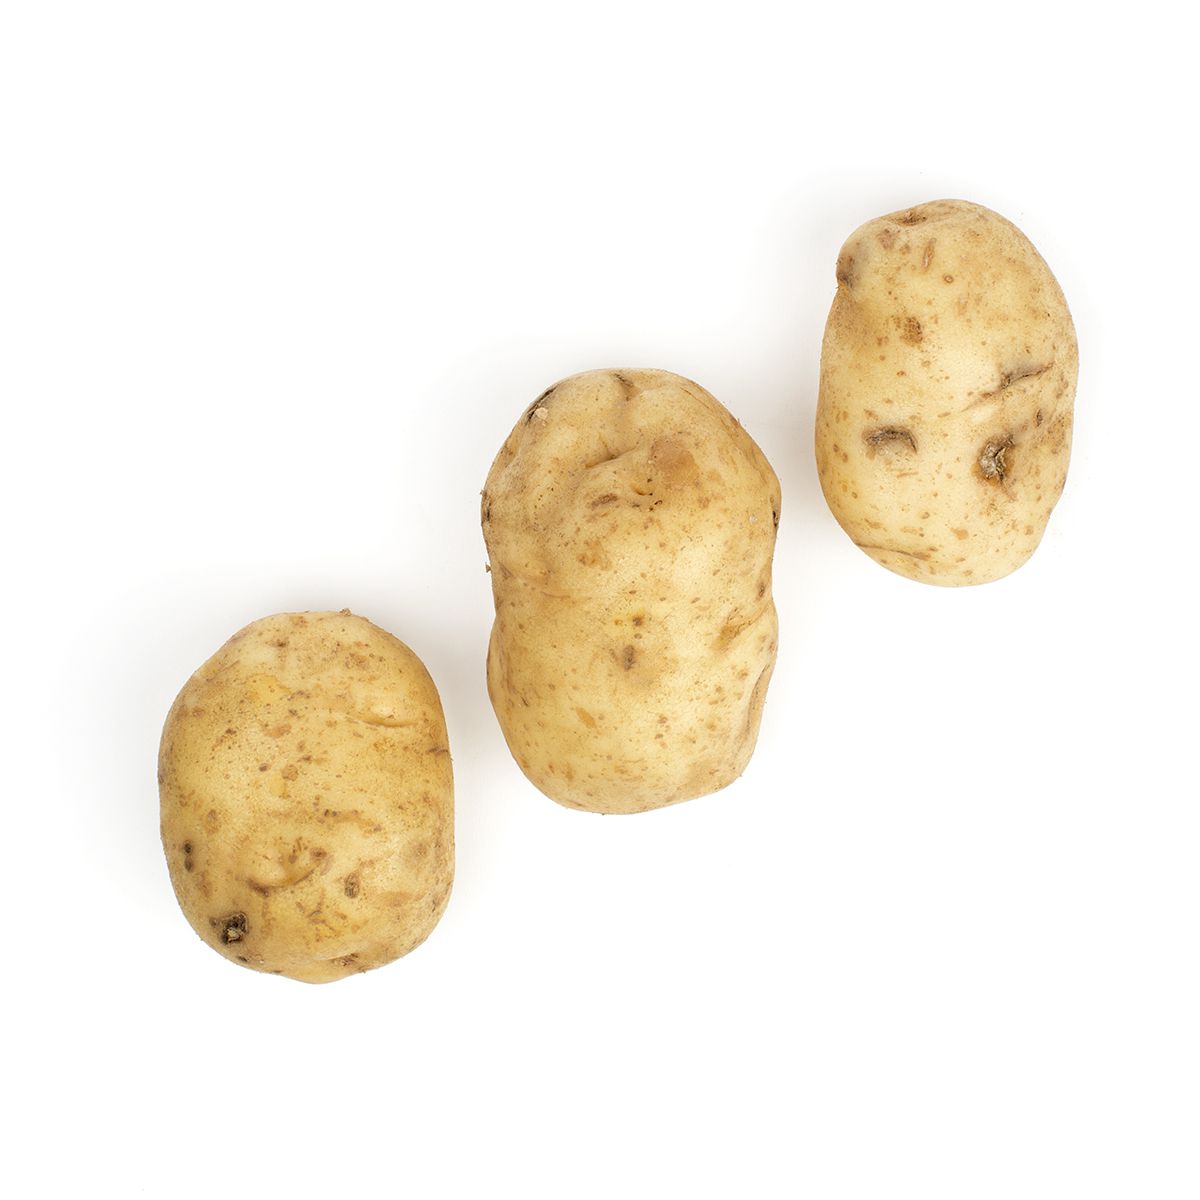 BoxNCase Kennebec Potatoes